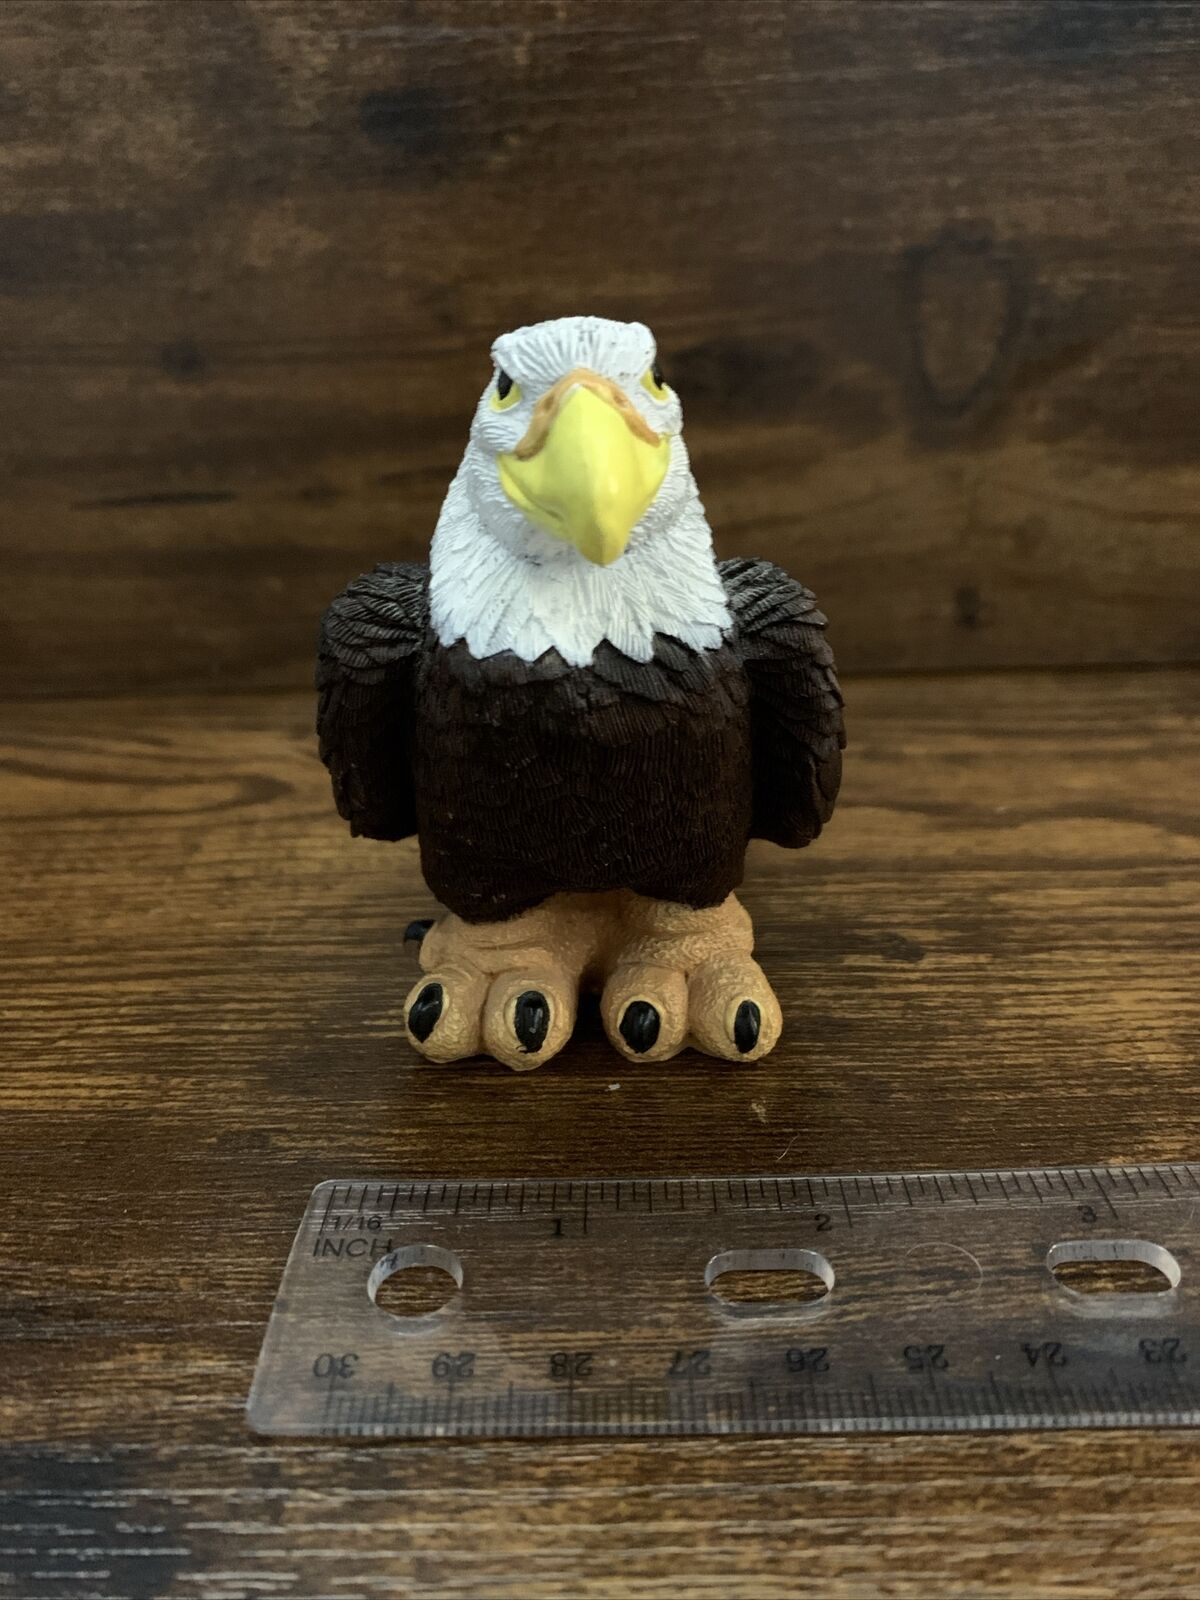 Eagle Figurine by Don James Vintage 